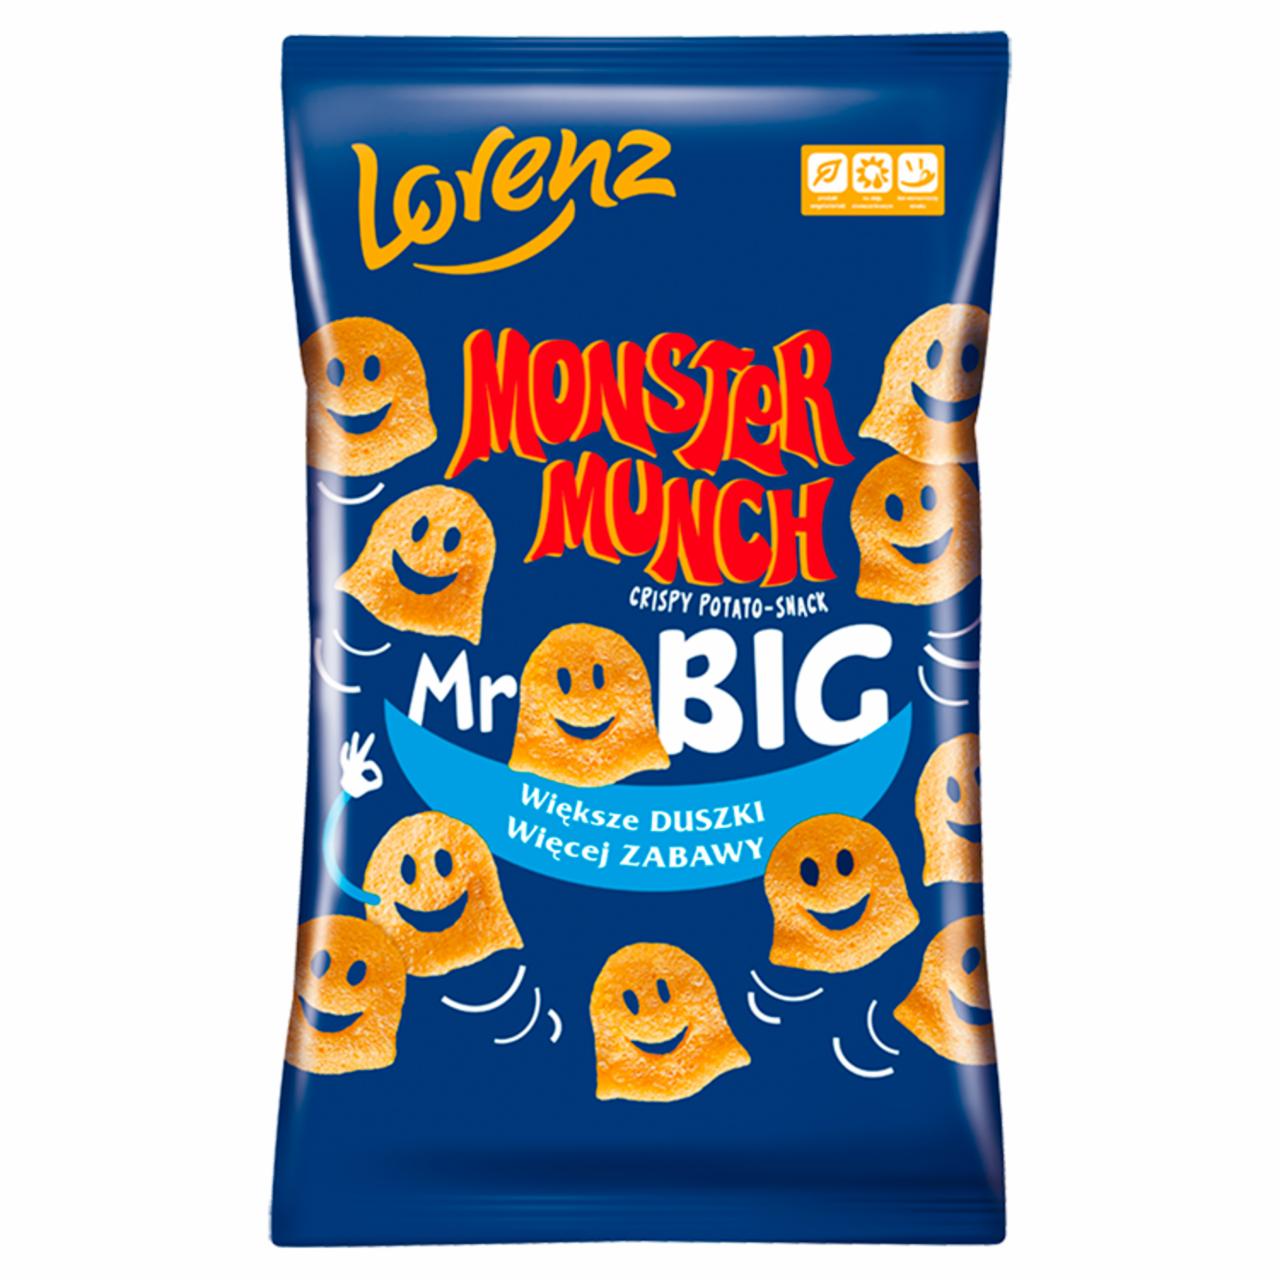 Zdjęcia - Monster Munch Mr Big Chrupki ziemniaczane przyprawione 90 g